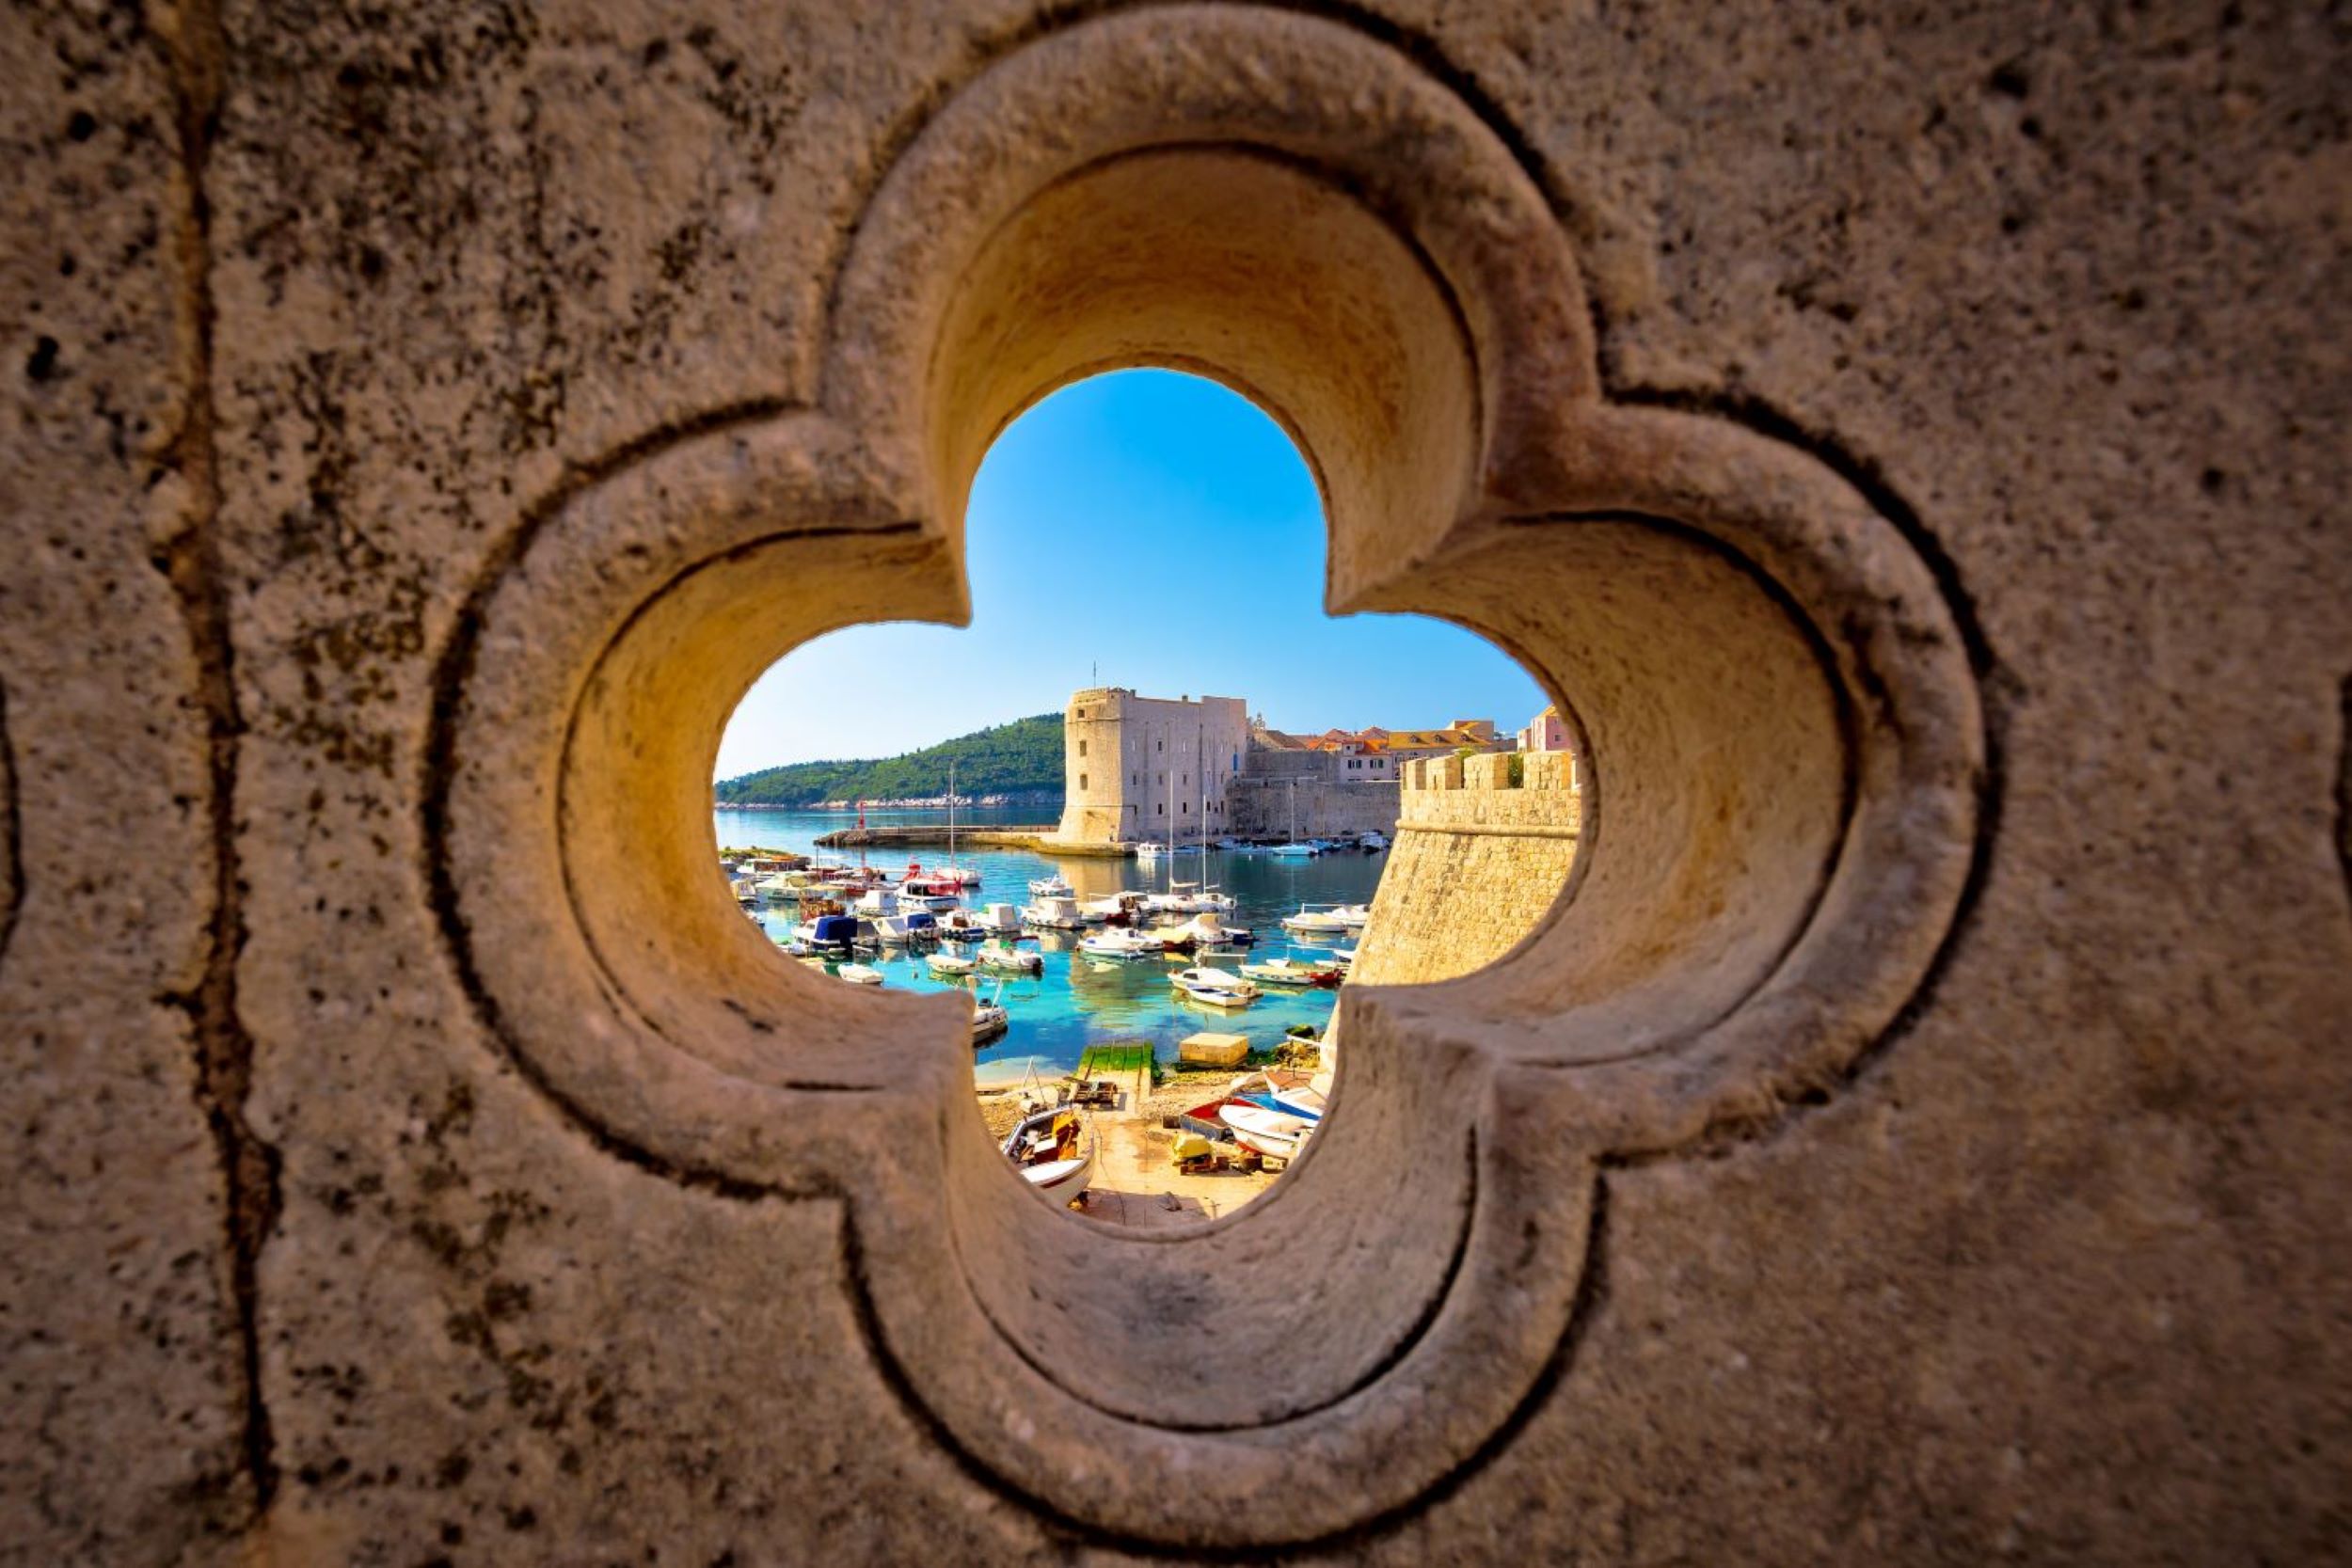 KNMtravel DMC, KNMexclusive, Croacia, navegacion, Dubrovnik , Elafiti islas